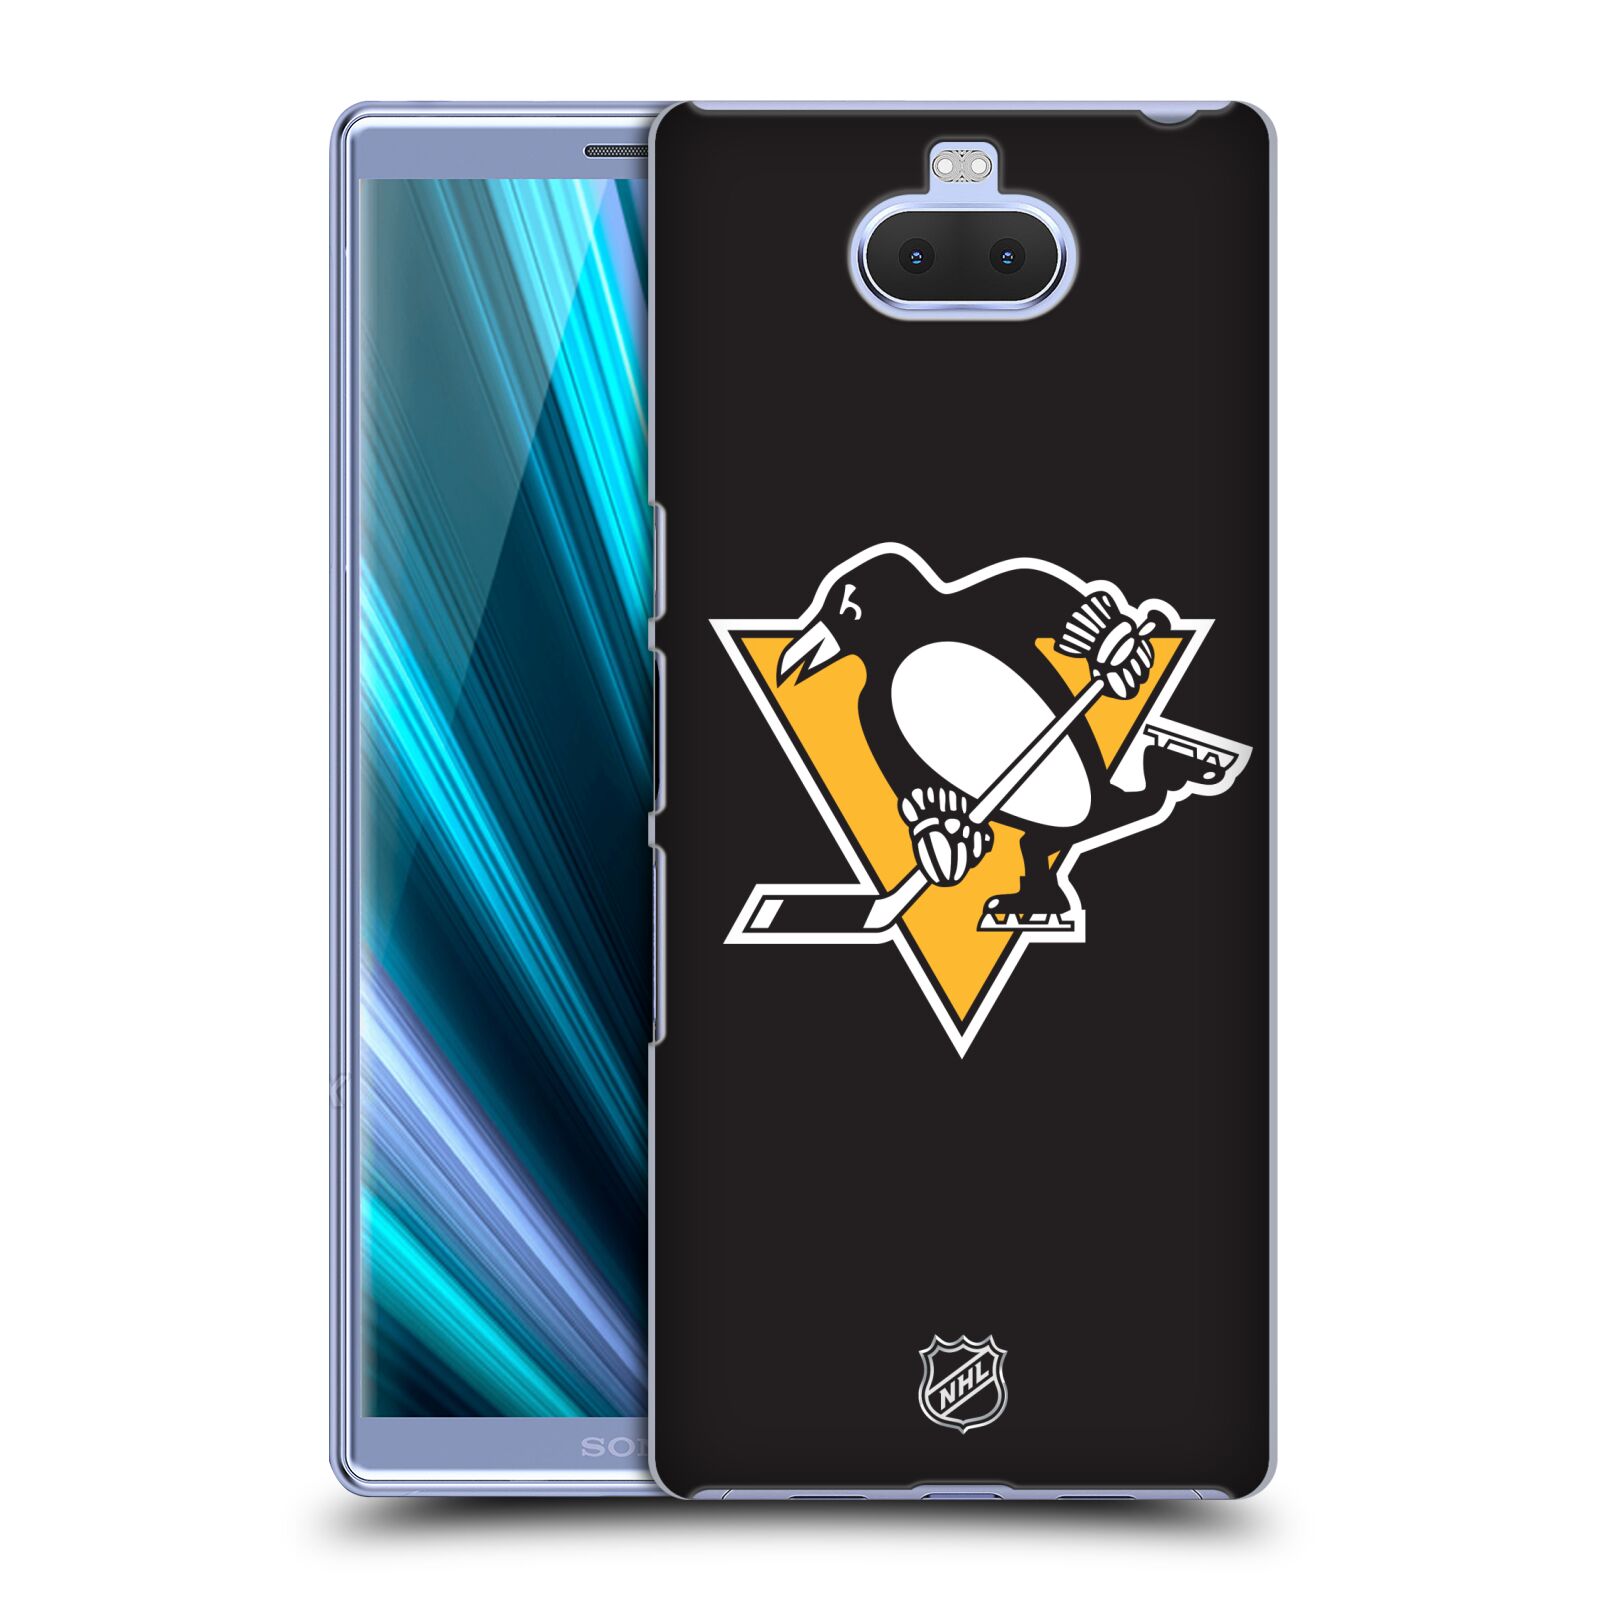 Pouzdro na mobil Sony Xperia 10 Plus - HEAD CASE - Hokej NHL - Pittsburgh Penguins - černé pozadí znak